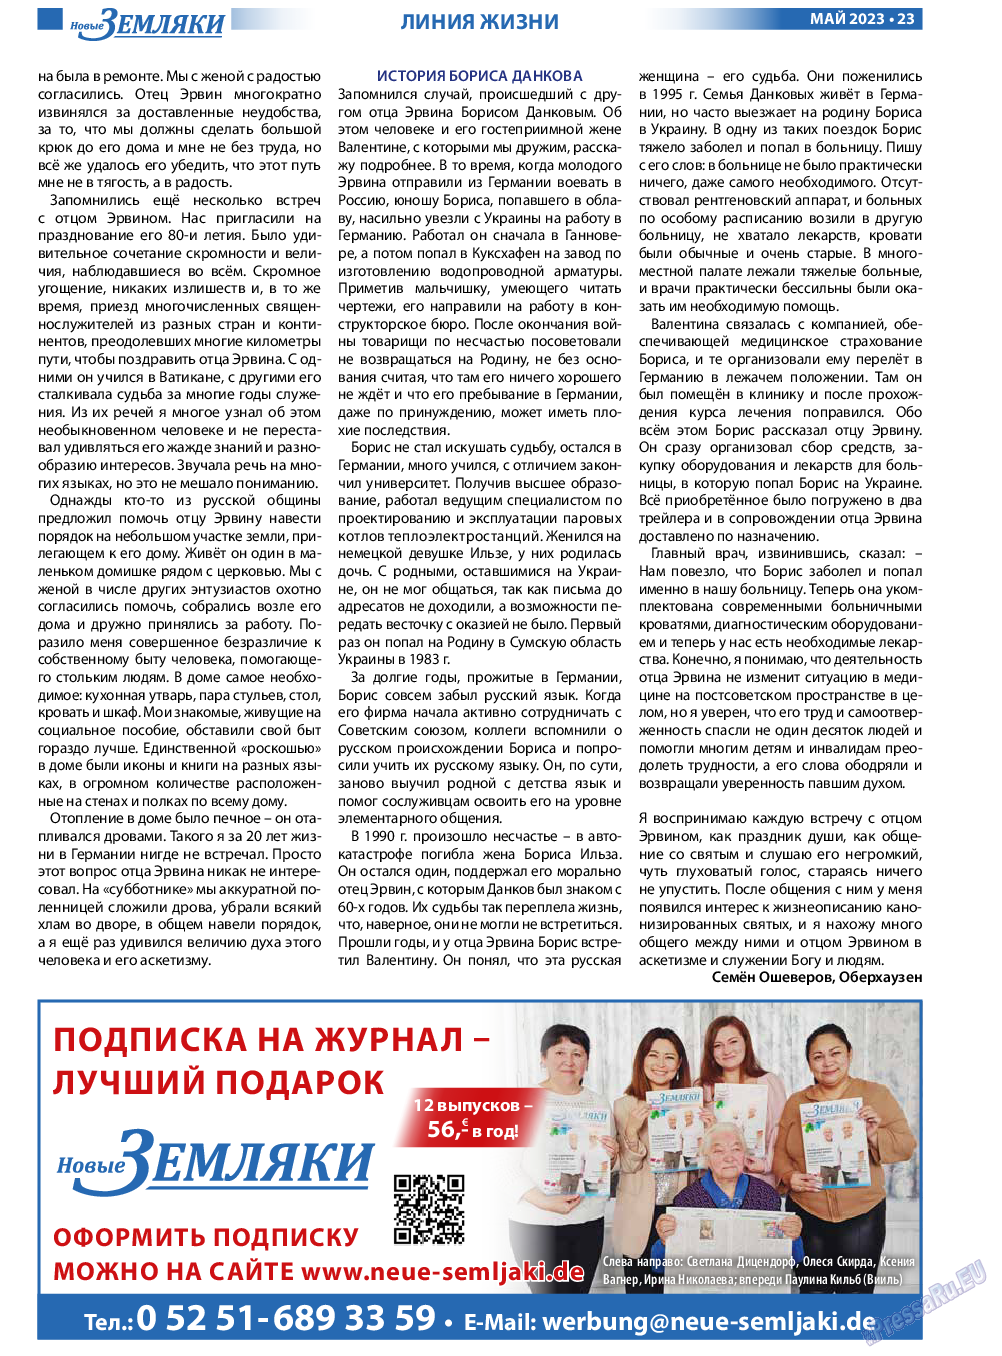 Новые Земляки, газета. 2023 №5 стр.23